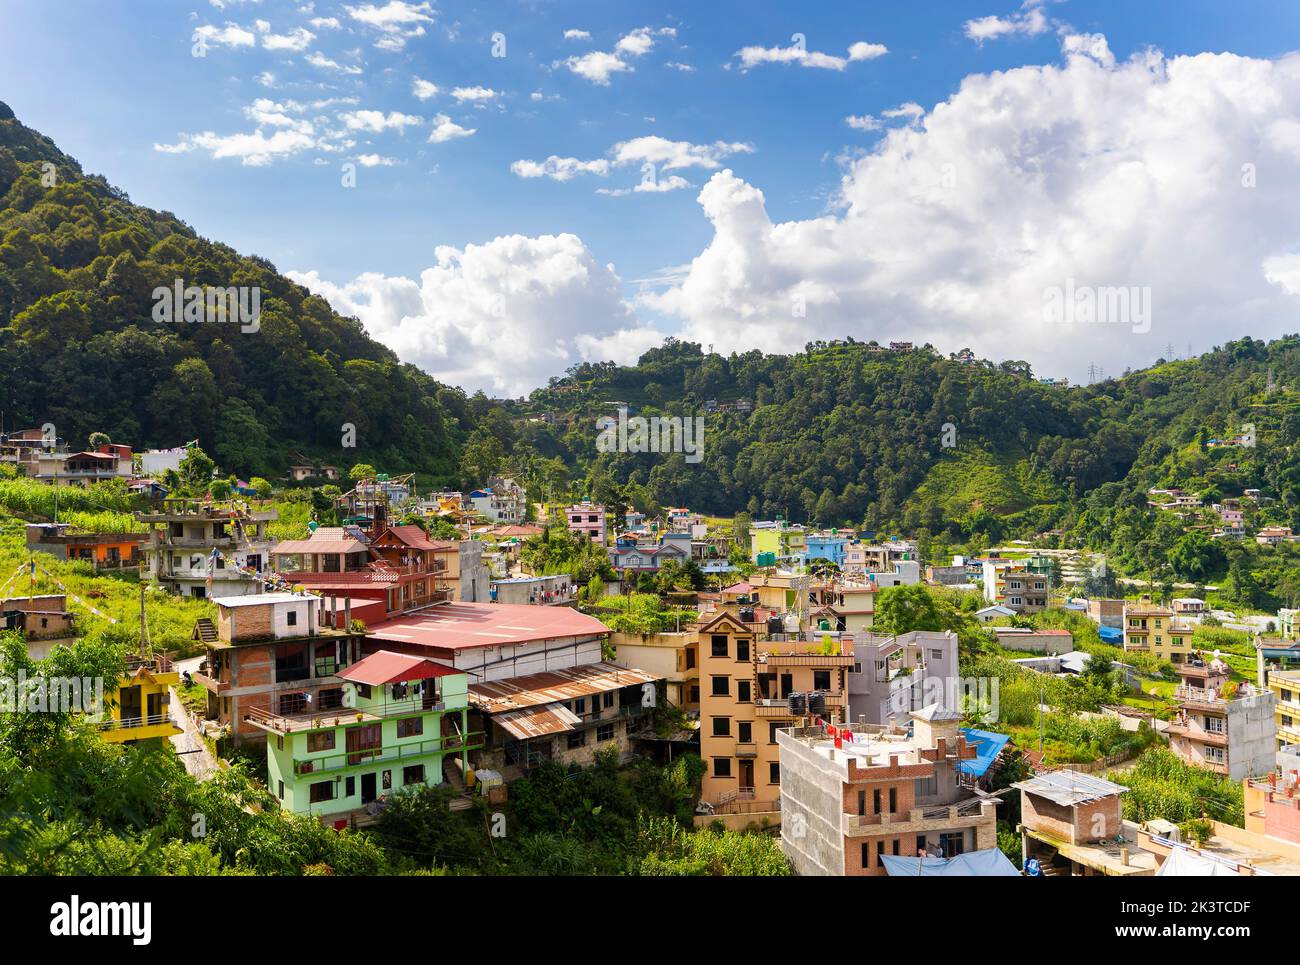 Vue sur les bâtiments colorés entourés de montagnes verdoyantes, Katmandou, Népal. Banque D'Images